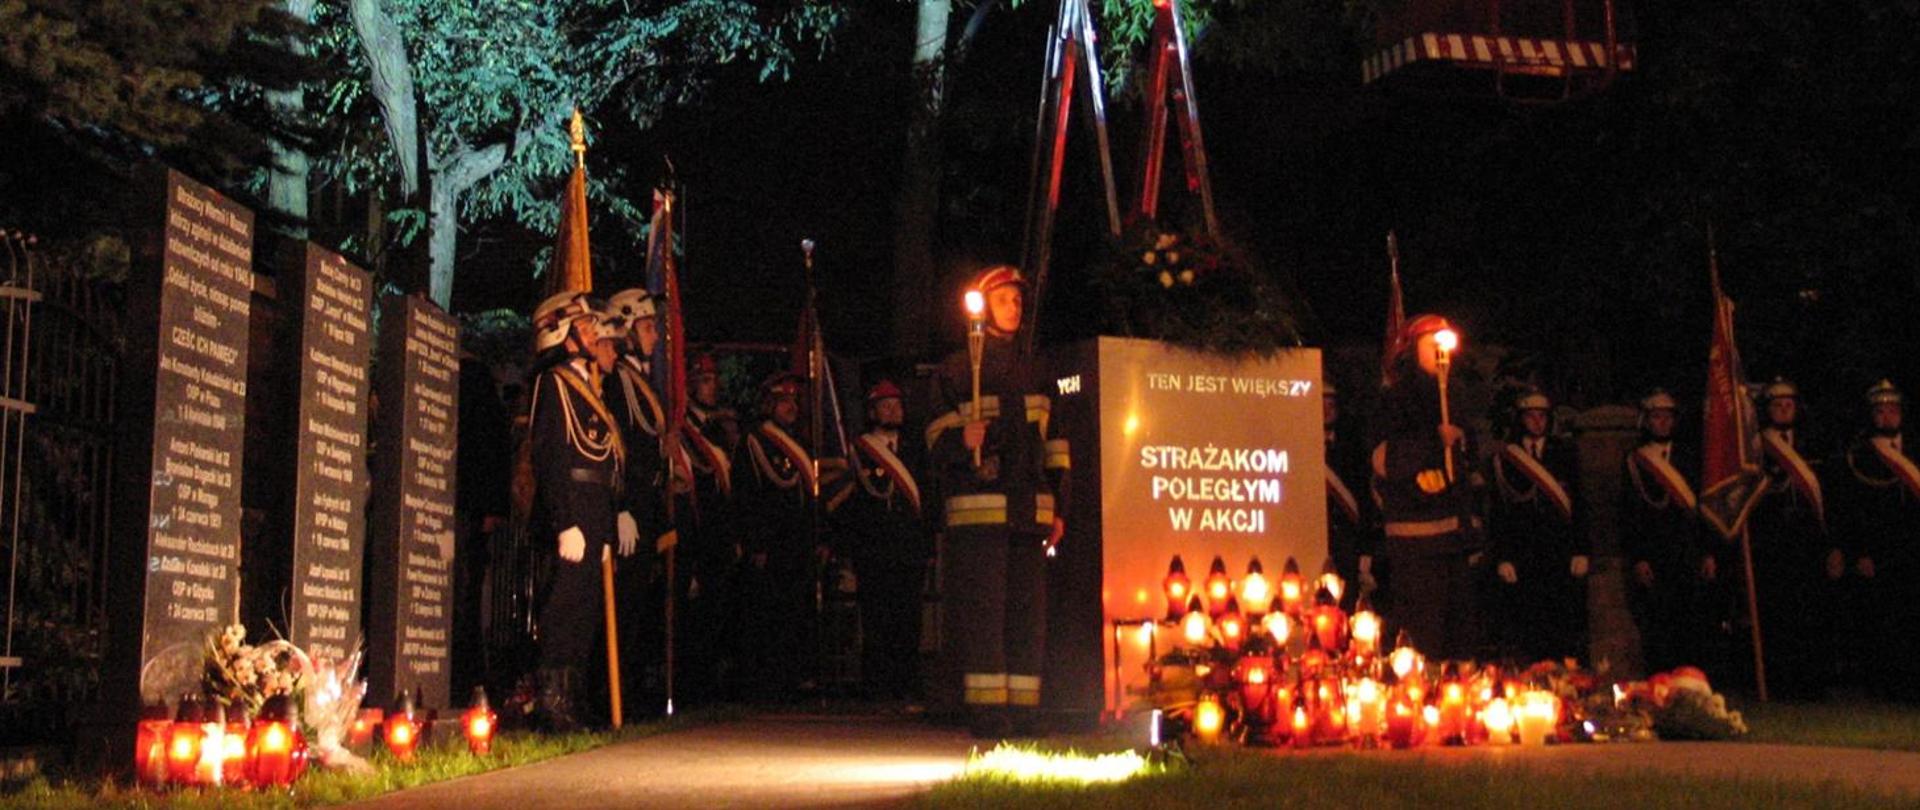 Zdjęcie przedstawia Strażaków w mundurach galowych i bojowych przed pomnikiem upamiętniającym poległych strażaków. Przed pomnikiem ustawione znicze.